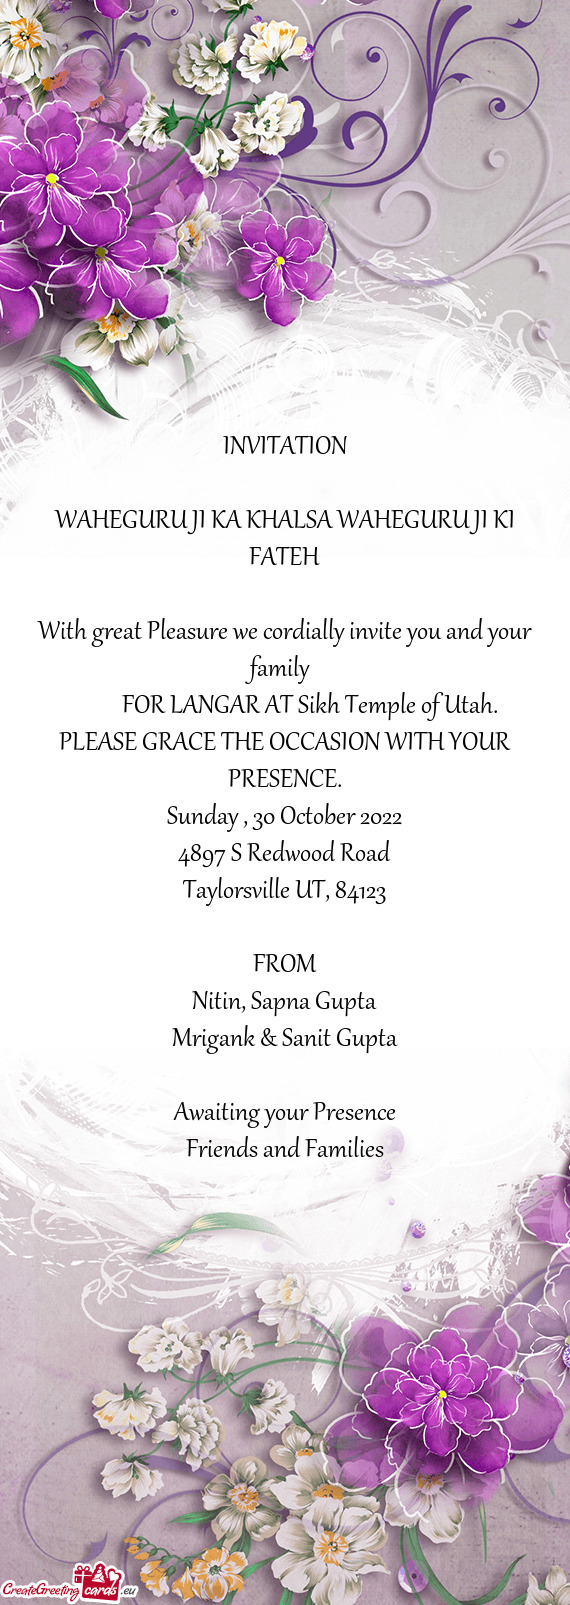 FOR LANGAR AT Sikh Temple of Utah